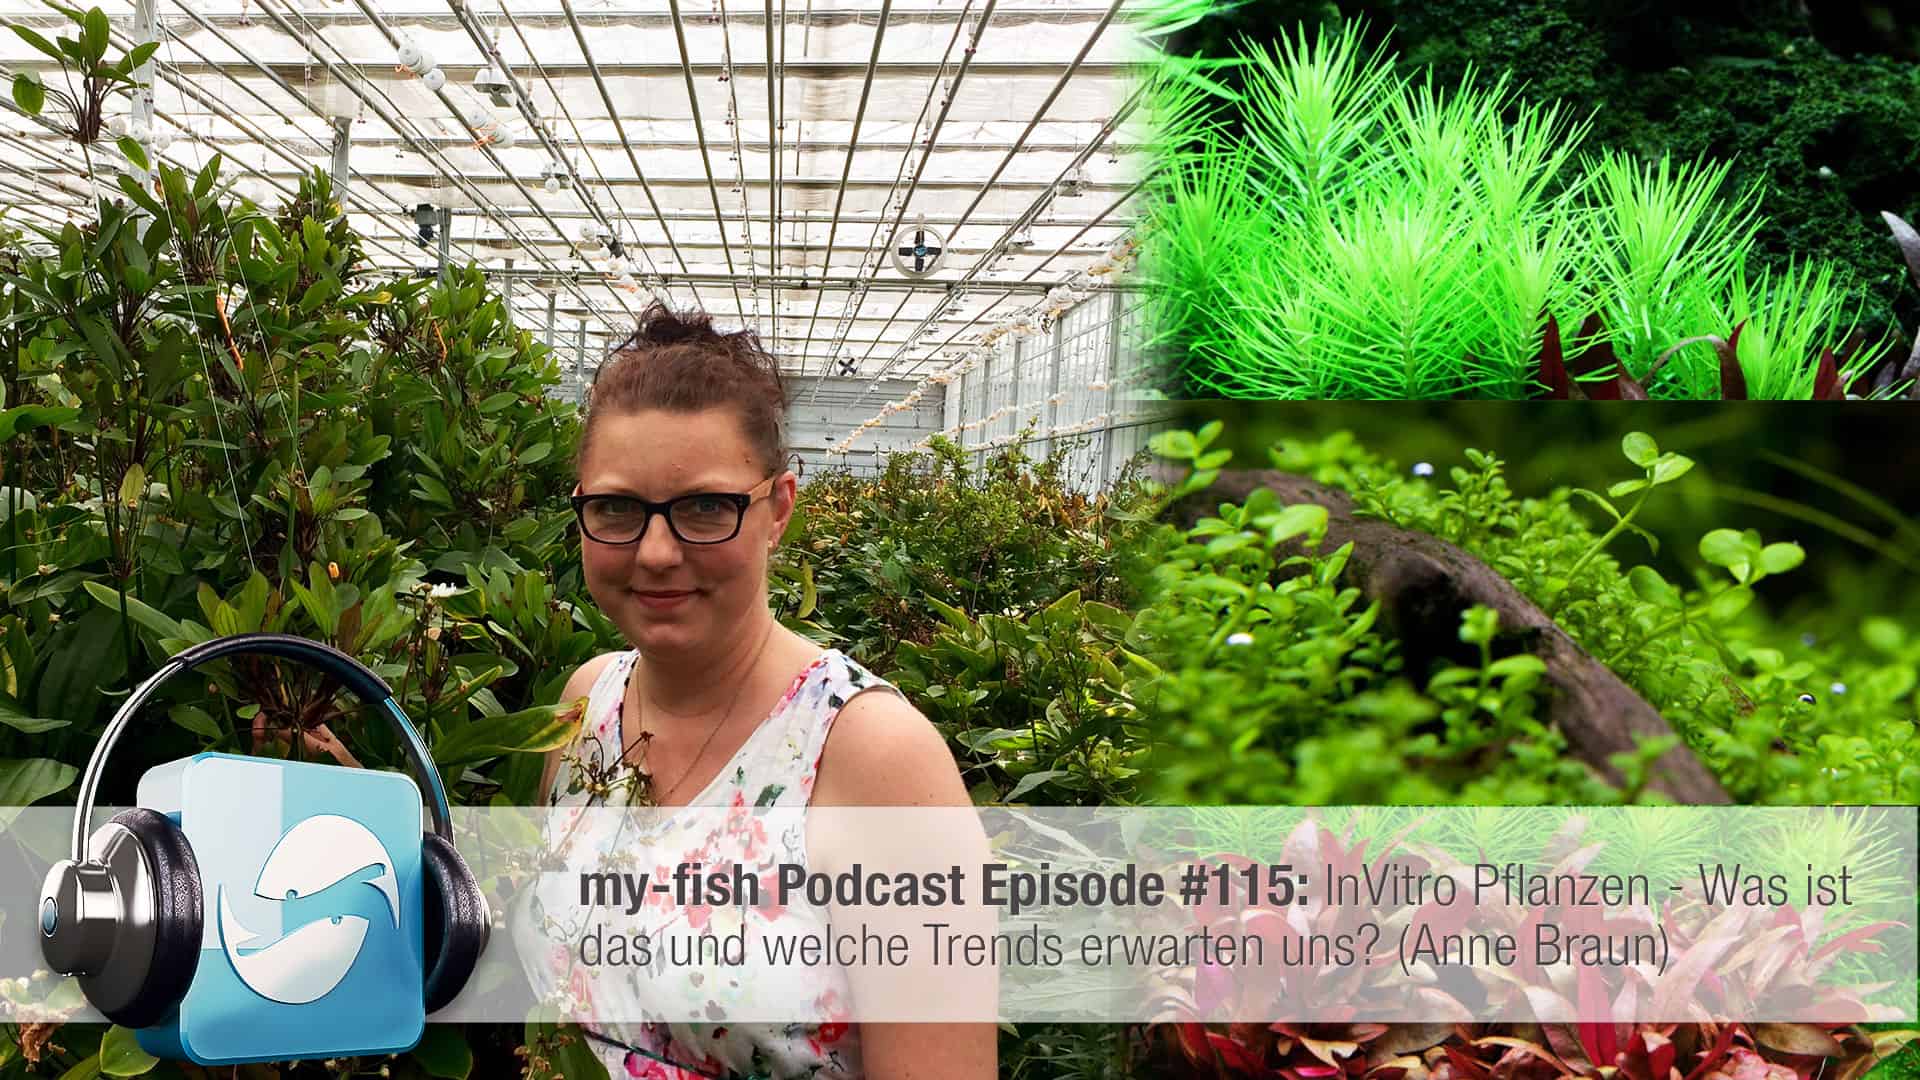 Podcast Episode #115: InVitro Pflanzen - Was ist das und welche Trends erwarten uns? (Anne Braun)